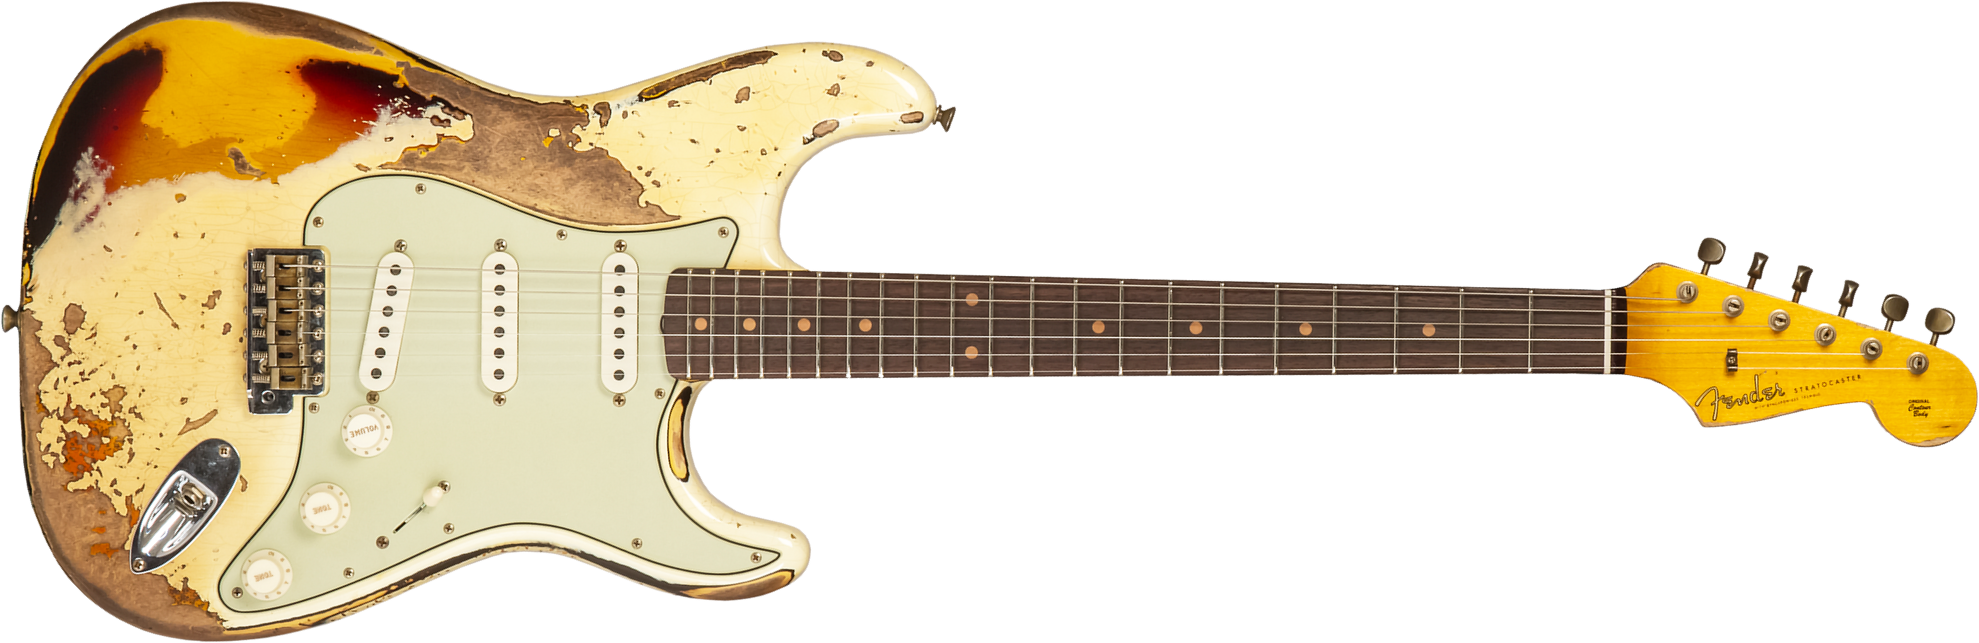 Fender Custom Shop Strat 1959 3s Trem Rw #cz576436 - Super Heavy Relic Vintage White O. 3-color Sunburs - Str shape electric guitar - Main picture